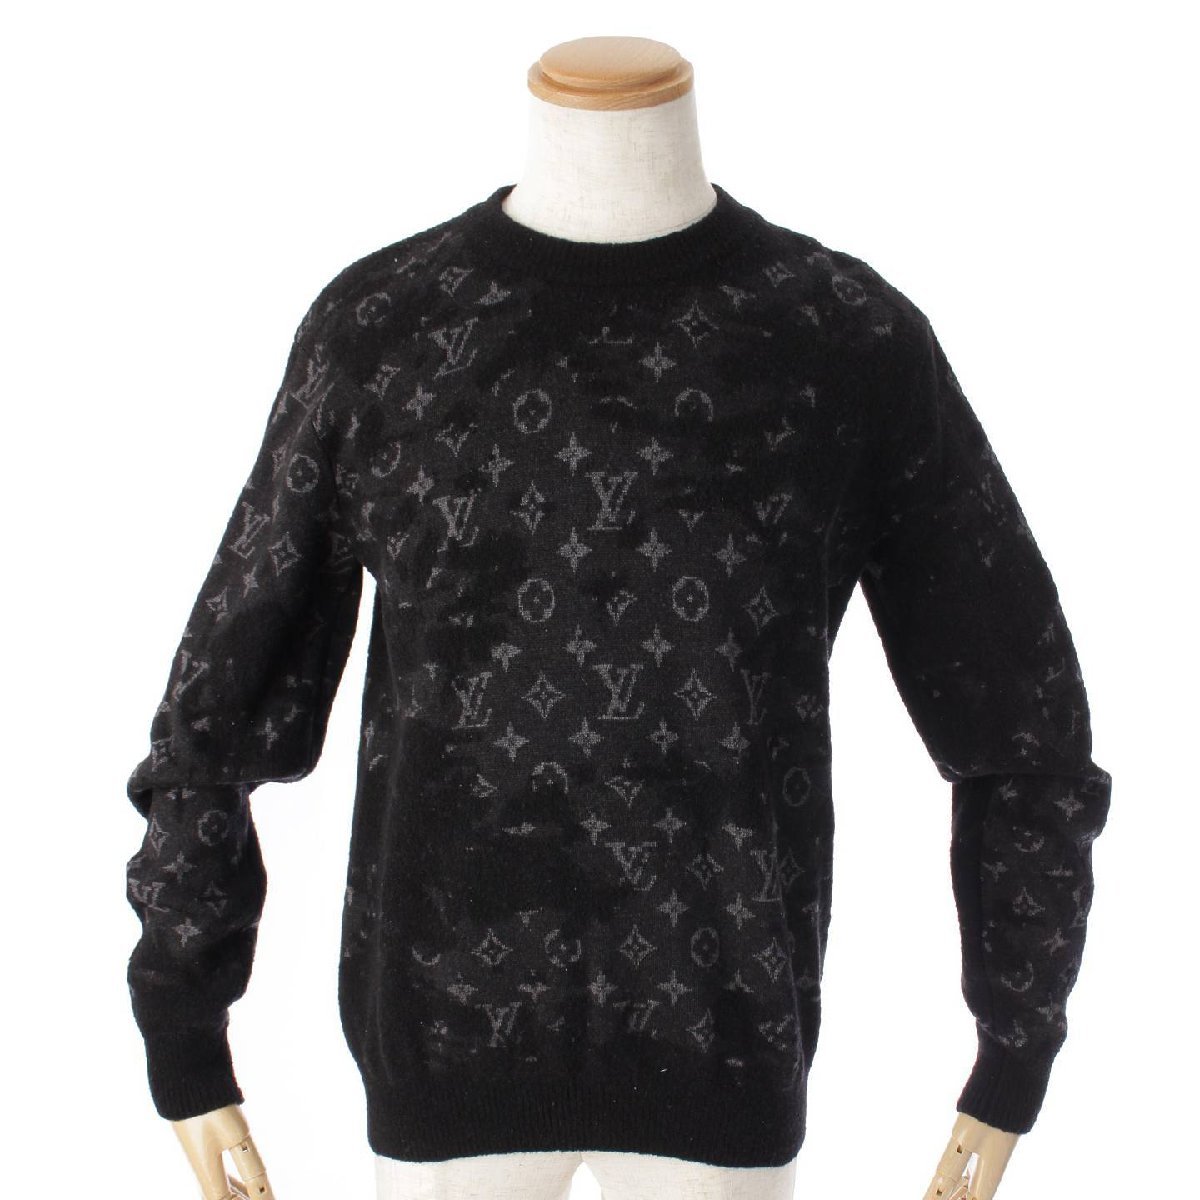 【ルイヴィトン】Louis Vuitton メンズ ディストレスト モノグラム クルーネック 長袖 ニット セーター ブラック S 173398